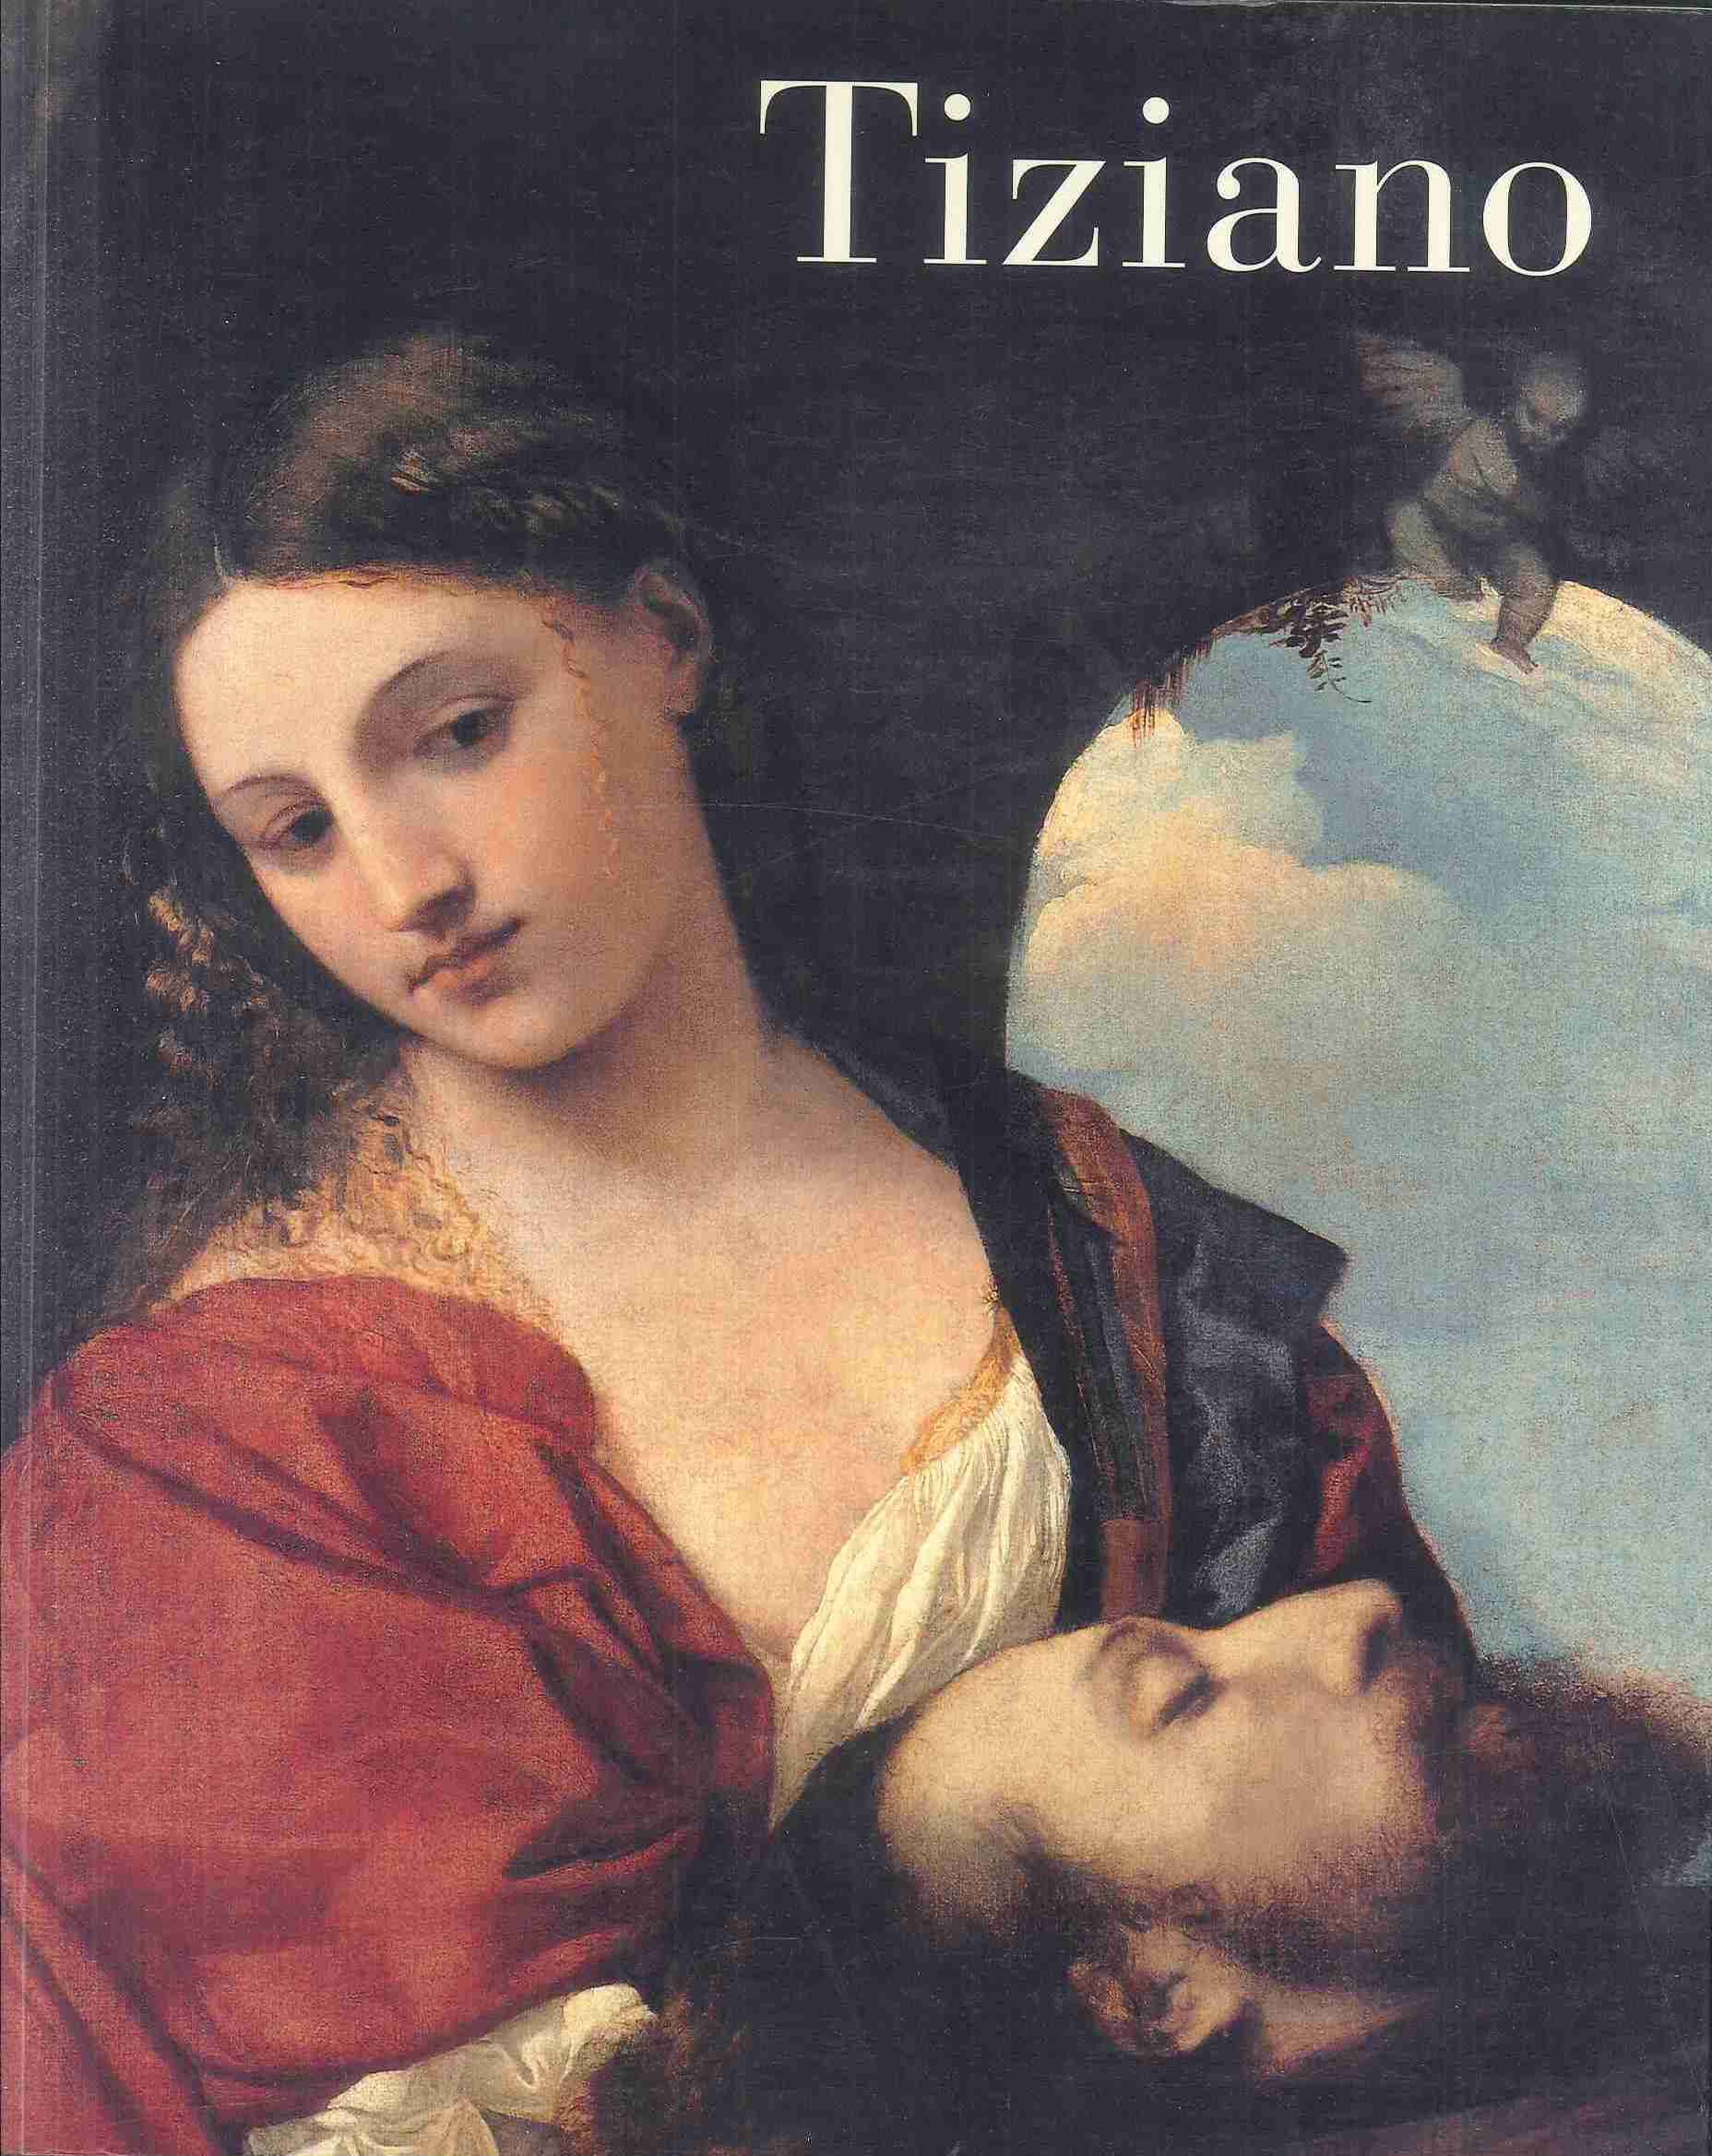 Imagen de portada del libro Tiziano